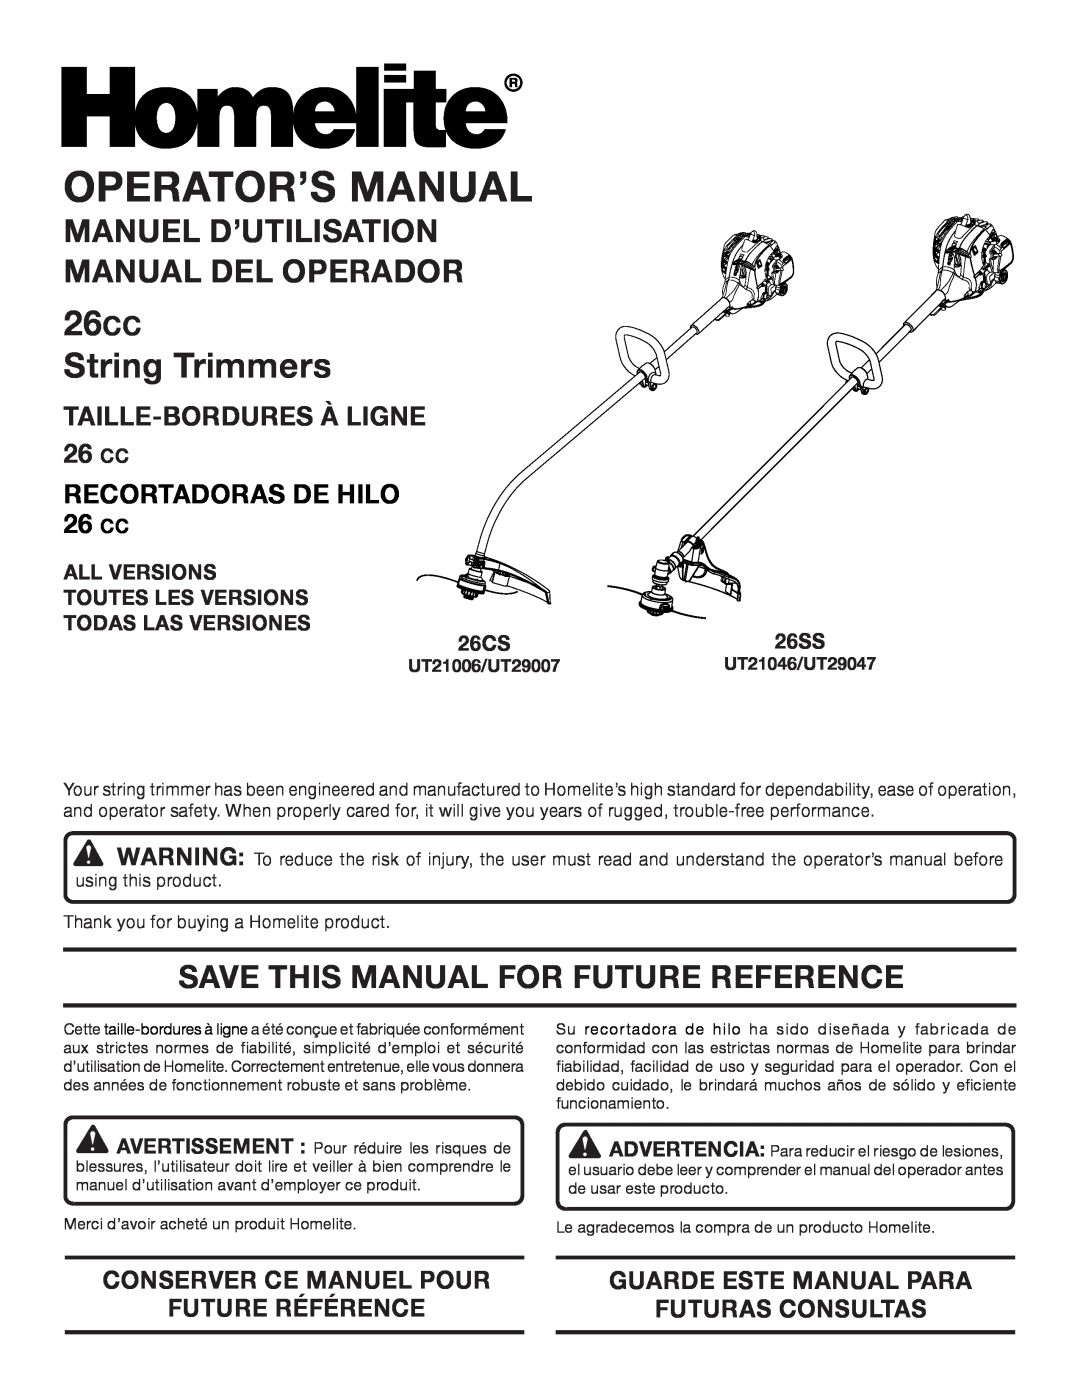 Homelite UT21006 manuel dutilisation 26CC String Trimmers, Manuel D’Utilisation Manual Del Operador, Operator’S Manual 